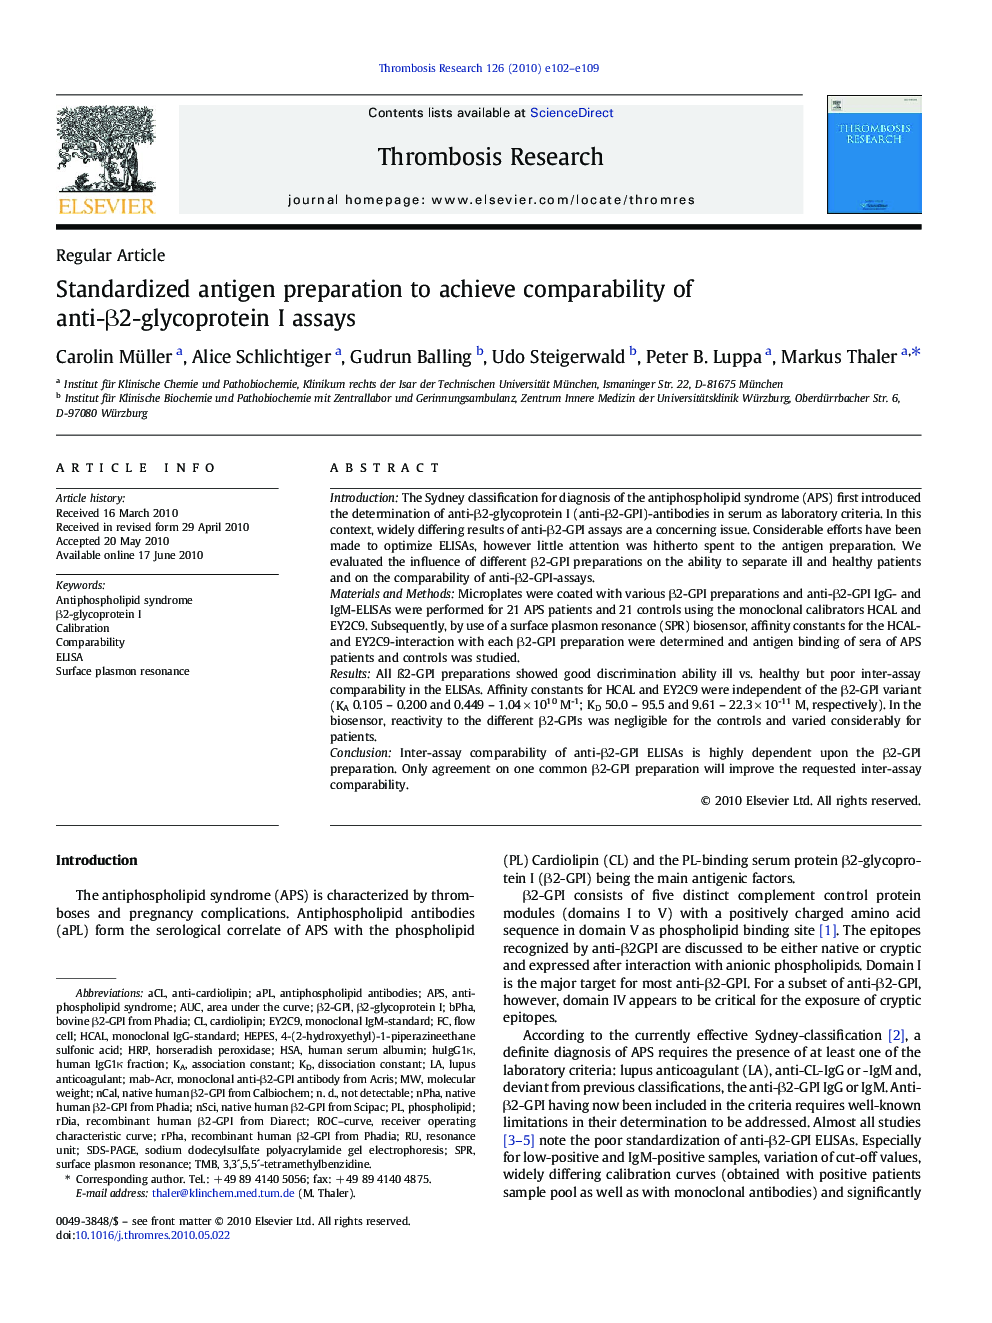 Standardized antigen preparation to achieve comparability of anti-Î²2-glycoprotein I assays